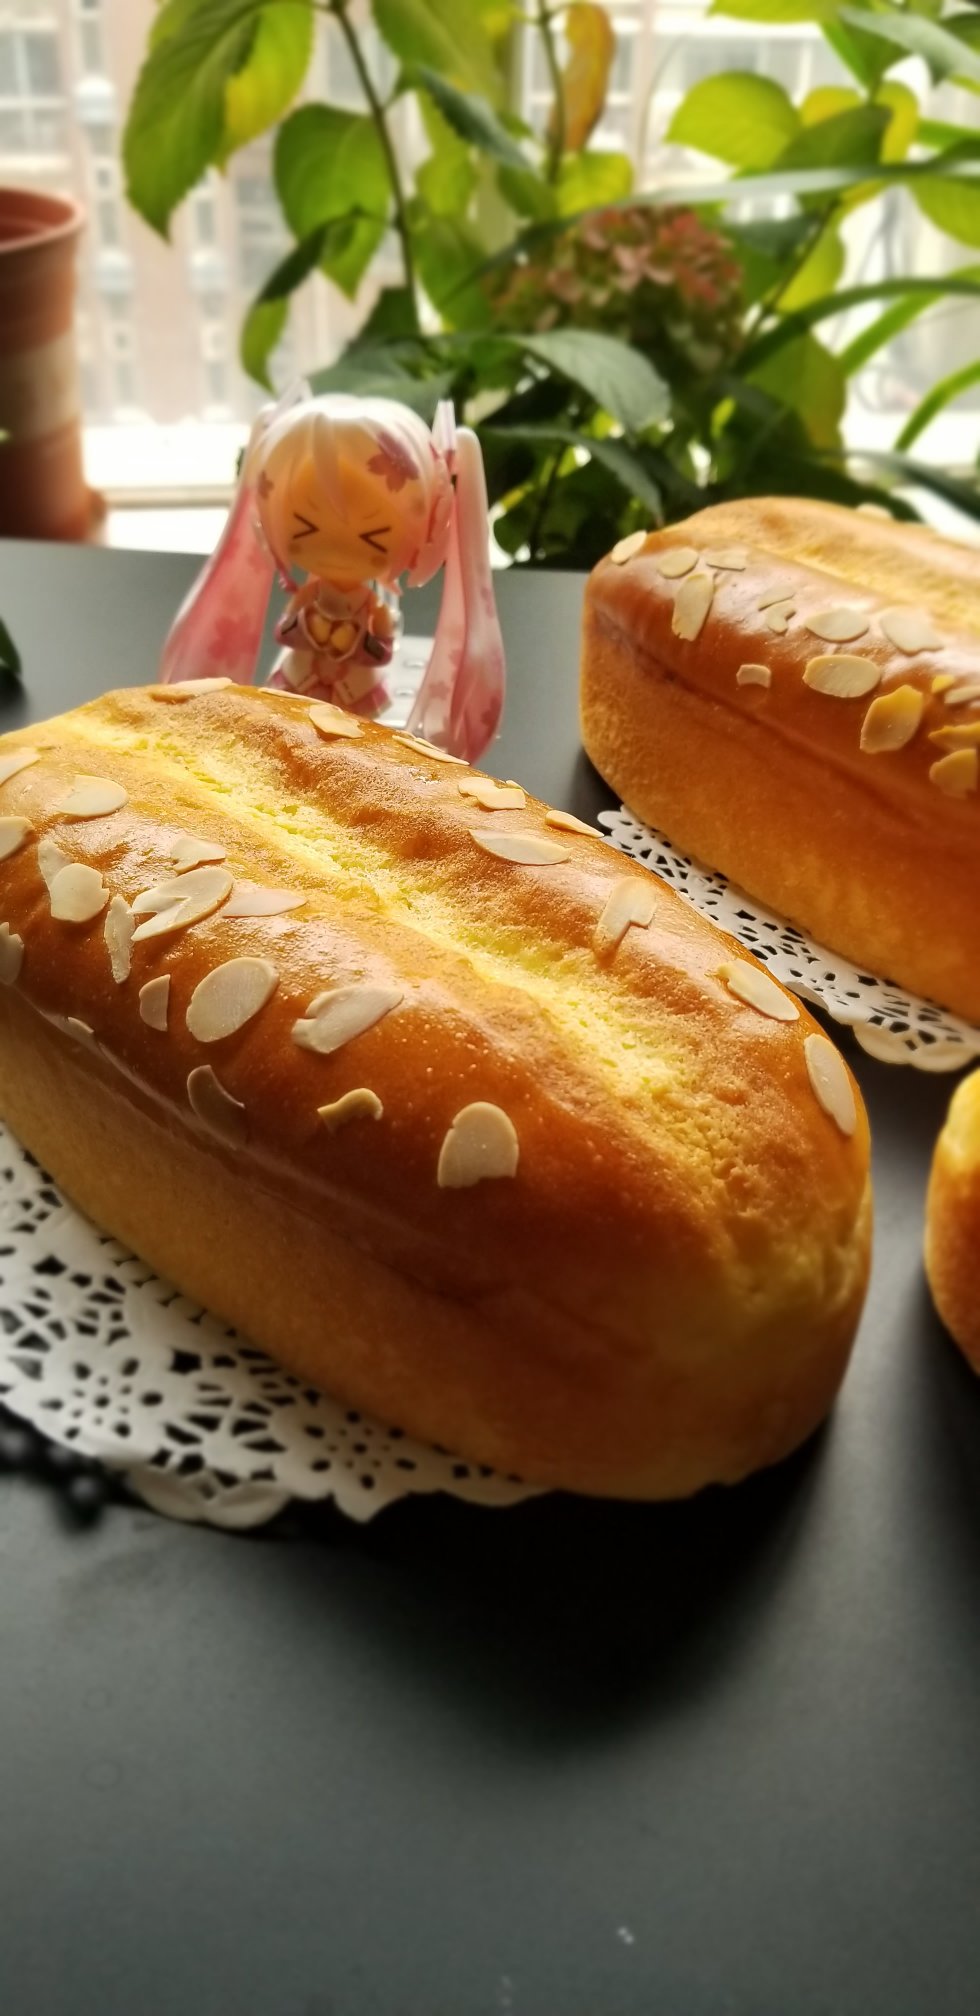 日式和风乳酪包 | 嘭嘭空气感的日式面包